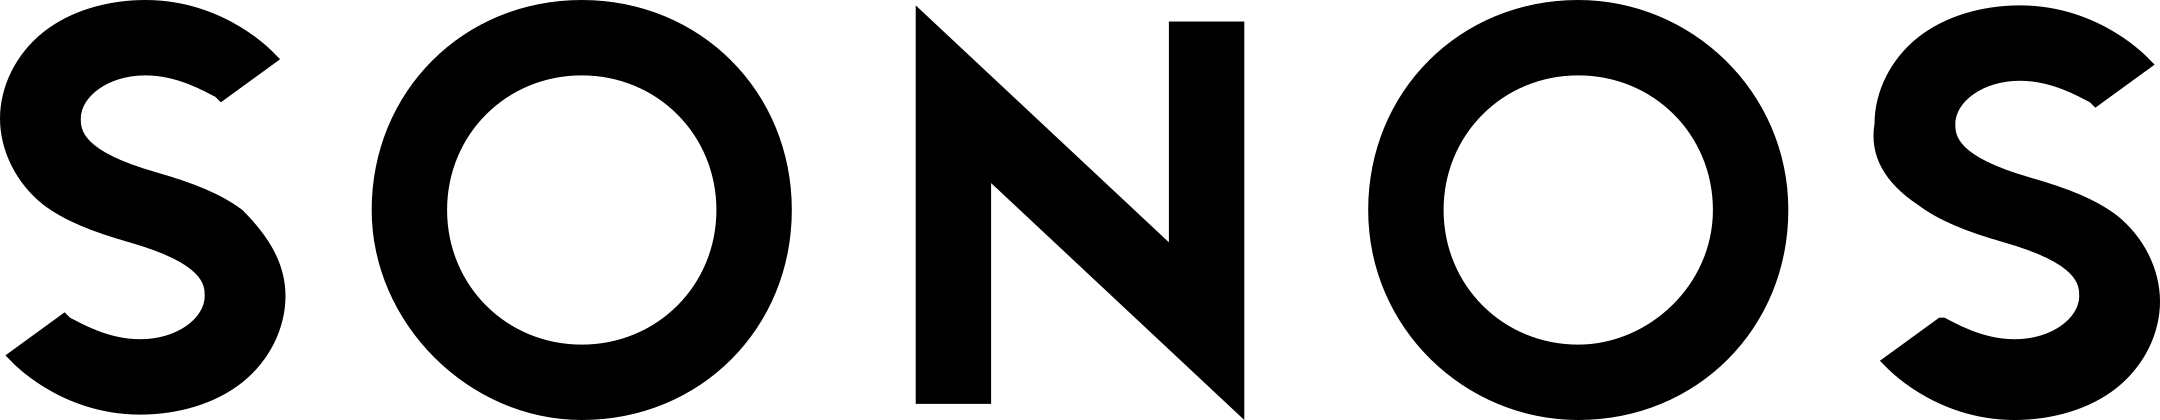 sonos logo 1 - Sonos Logo